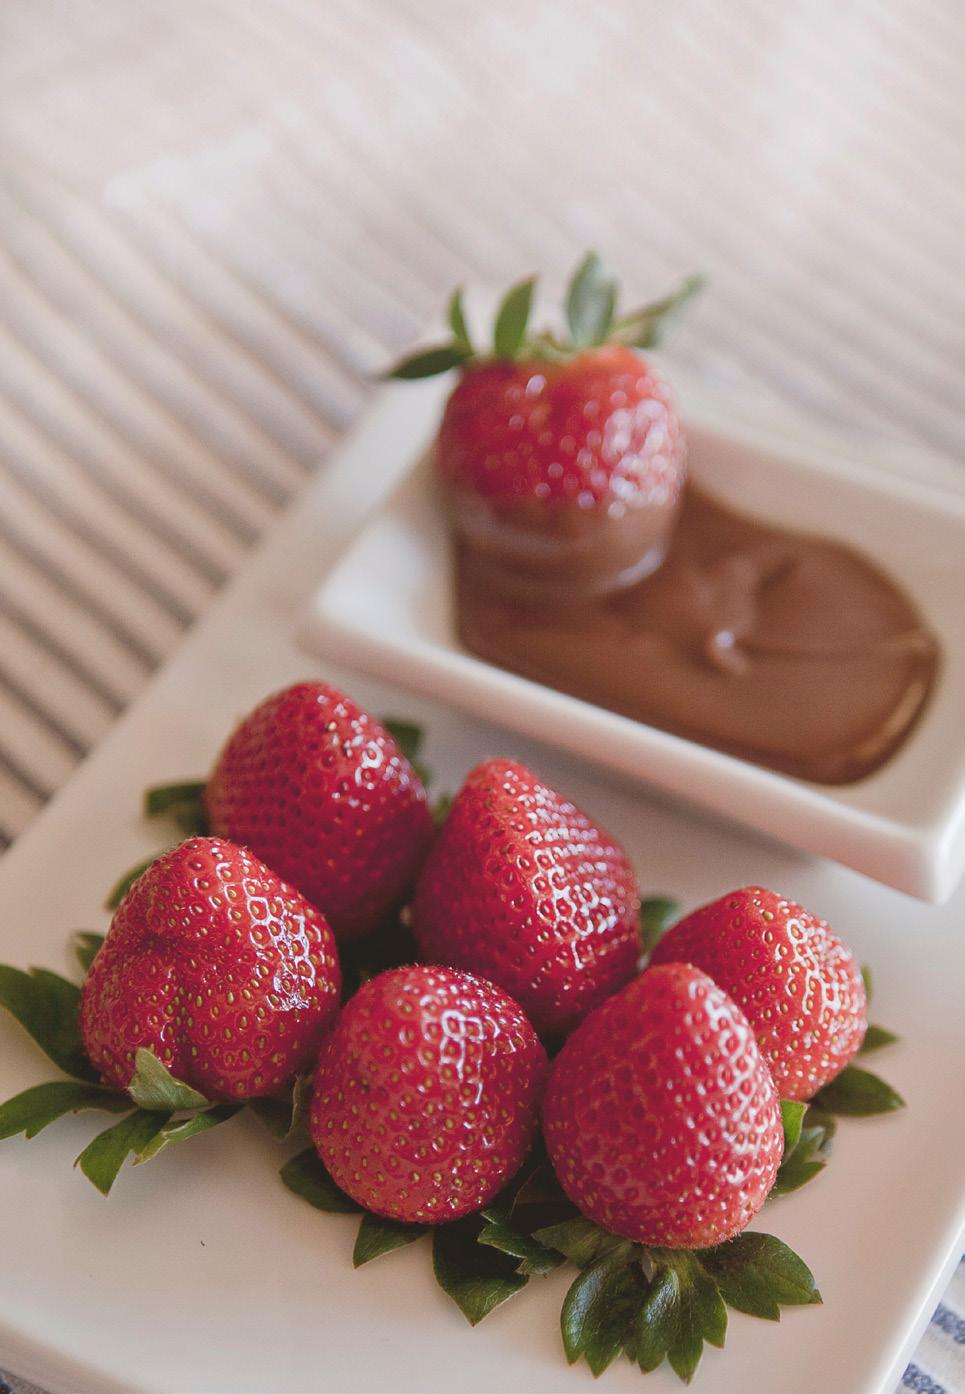 VIVA! xxxxx GASTVRIJ Aardbeien en erwten De zomer is begonnen en dat betekent ook dat het eten van aardbeien erg voor de hand ligt. U kunt aardbeien natuurlijk ook gebruiken in toetjes en taarten.